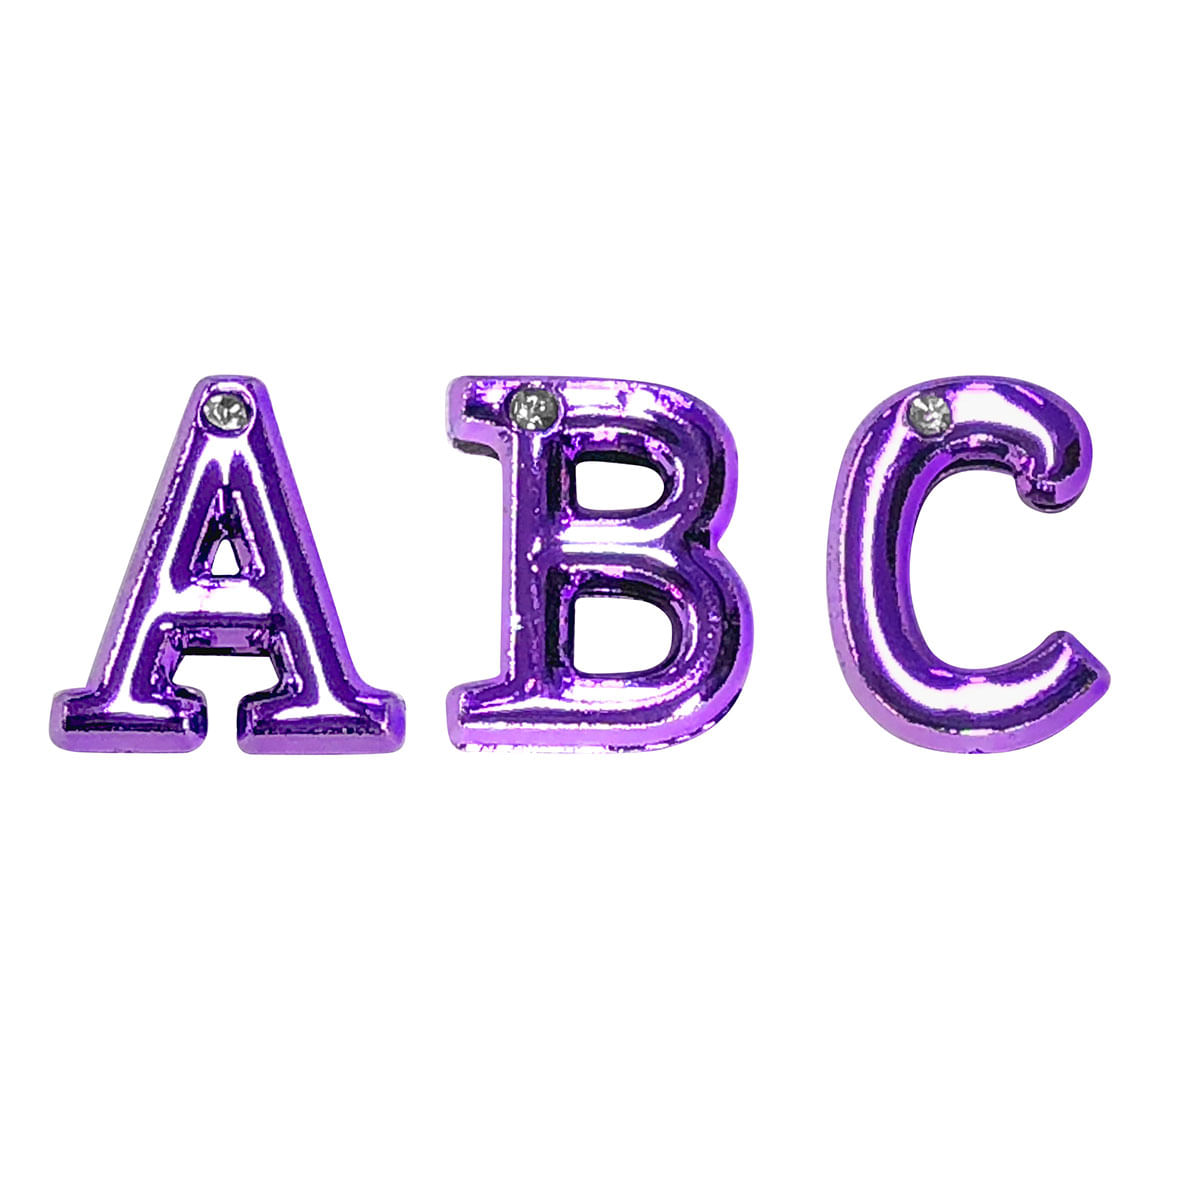 Letras Roxa com Strass para Personalização do Plug ABC Hard